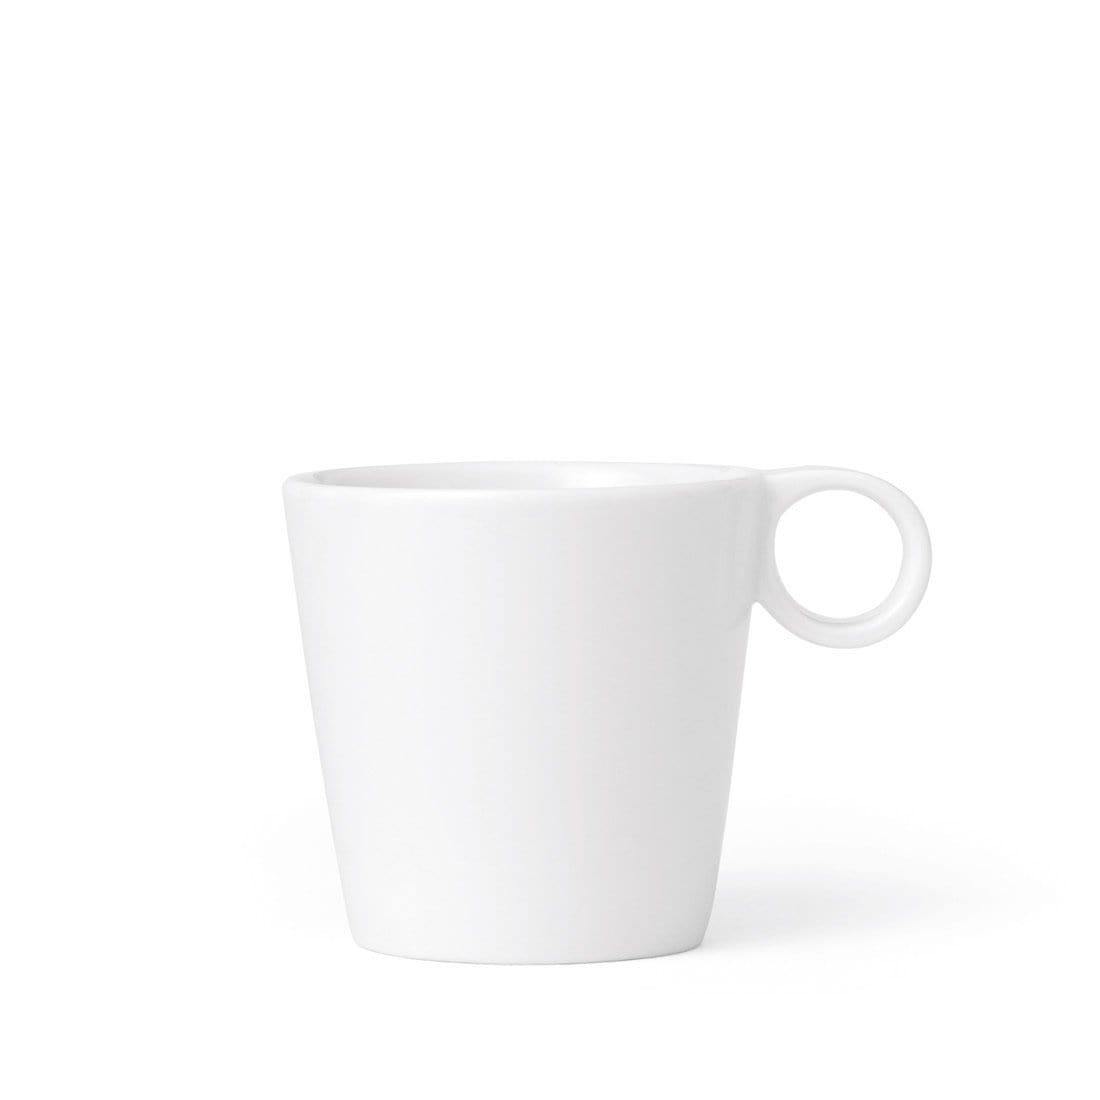 Jaimi™ Tea Cup Large - Set Of 2 Cups & Mugs VIVA Scandinavia 